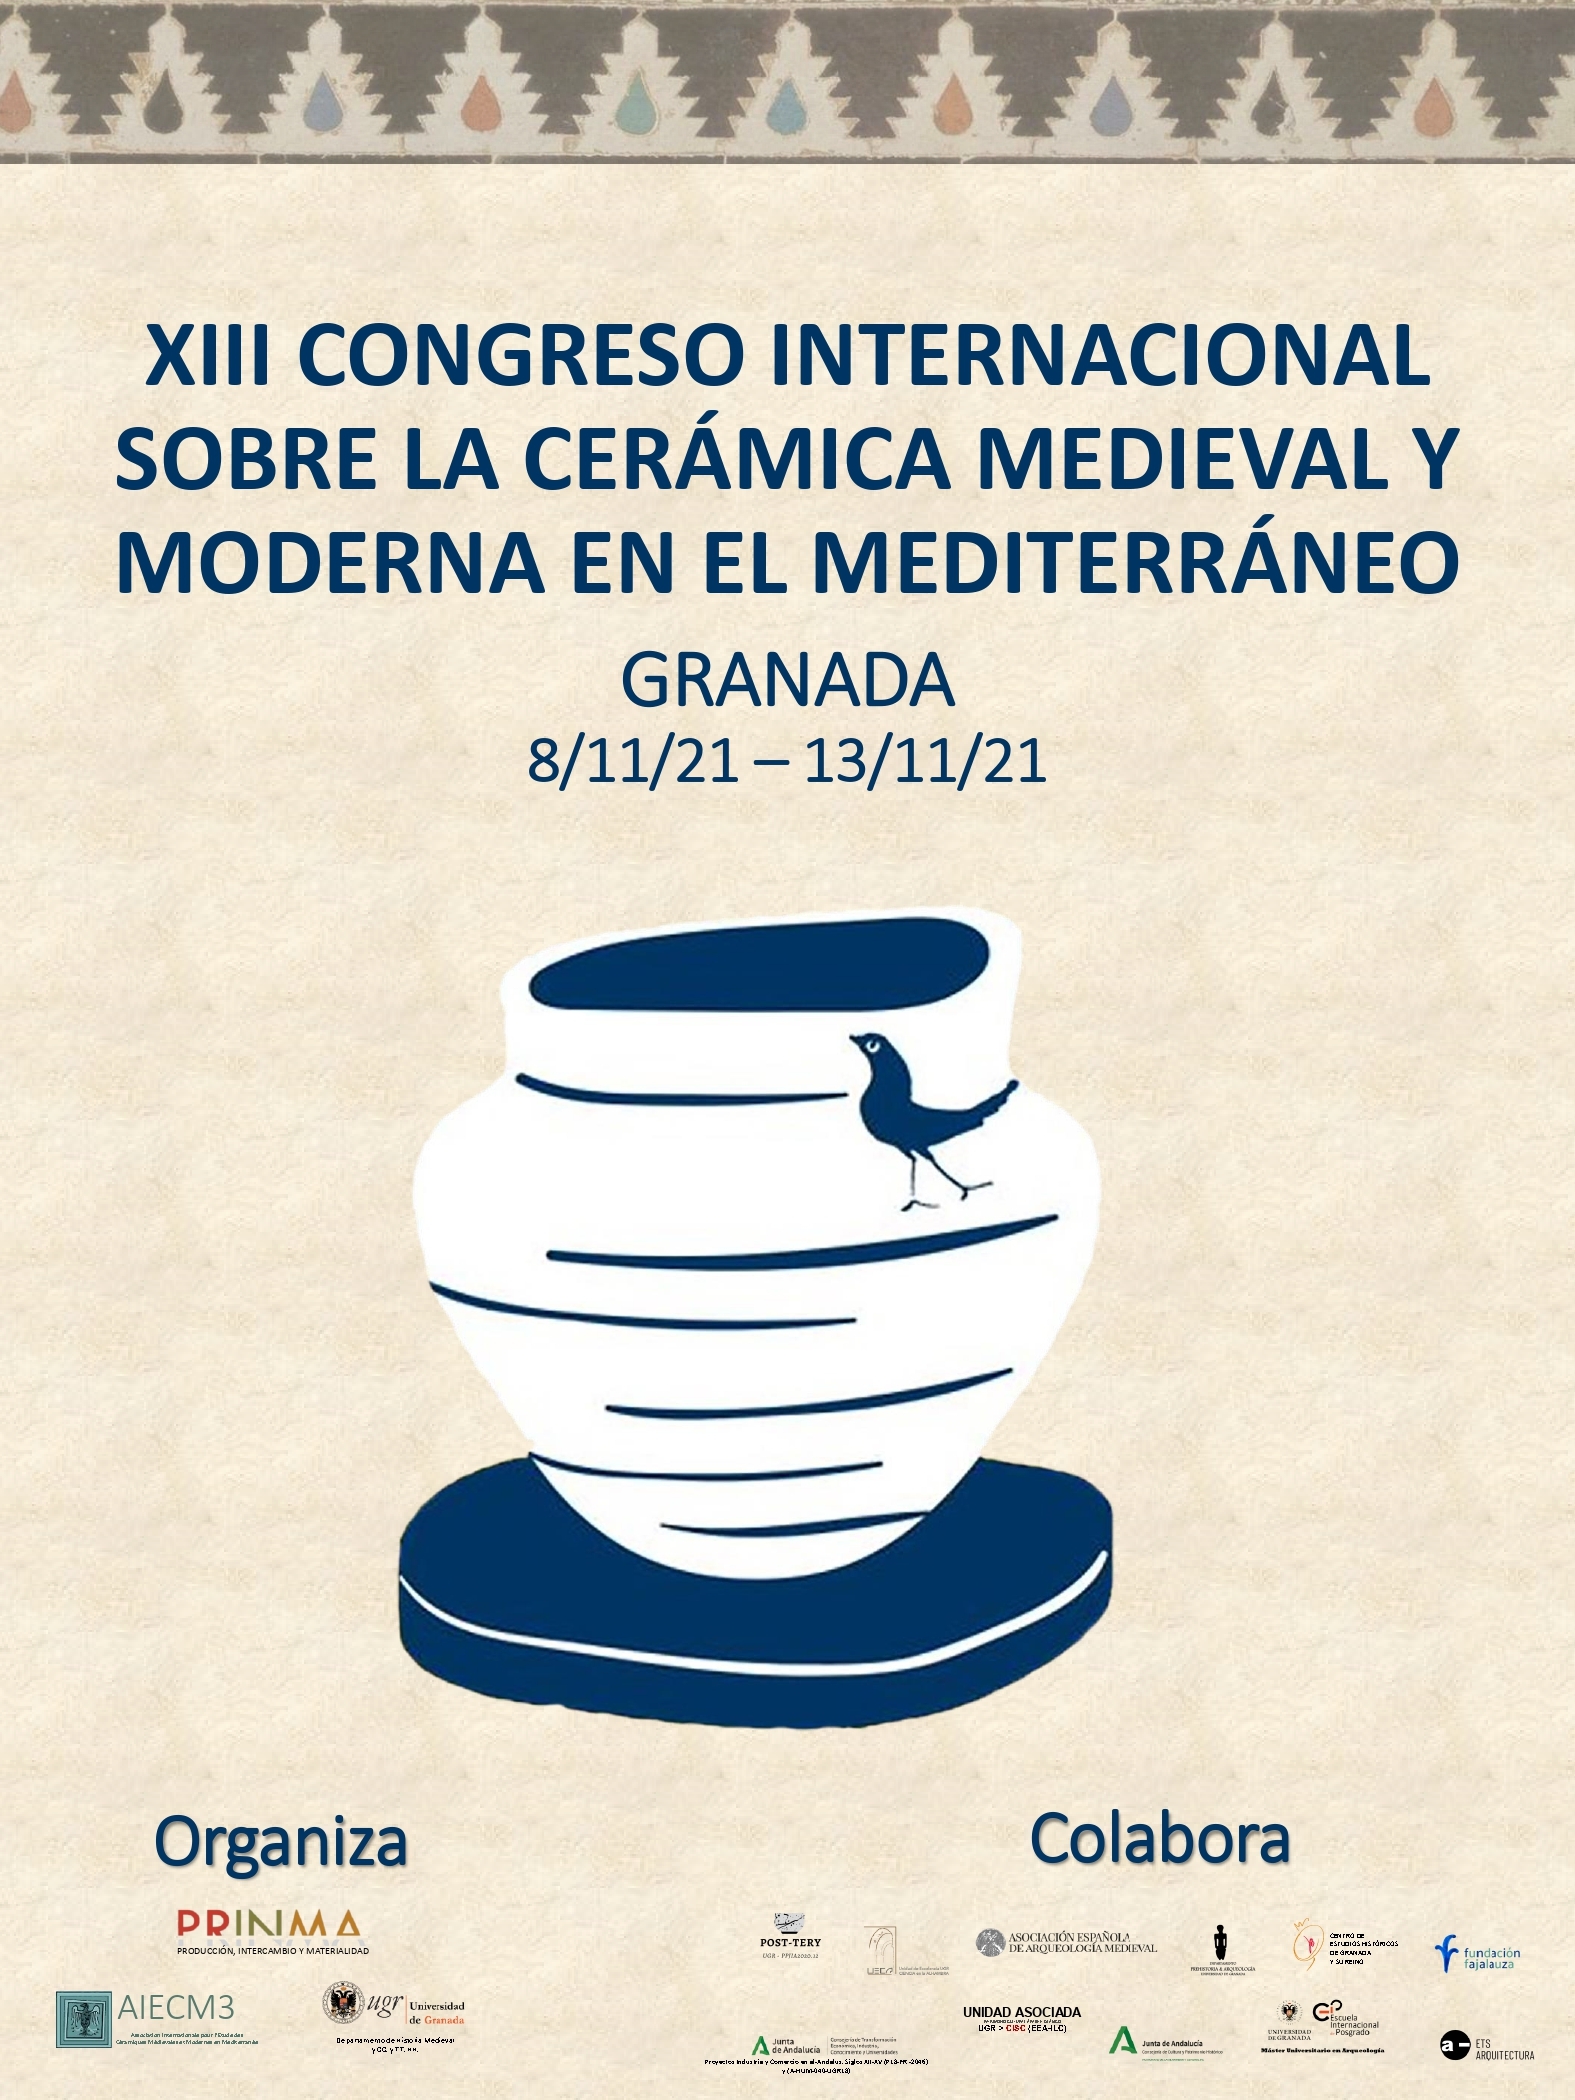 Granada alberga por primera vez el Congreso Internacional sobre Cerámica Medieval y Moderna en el Mediterráneo de la AIECM3